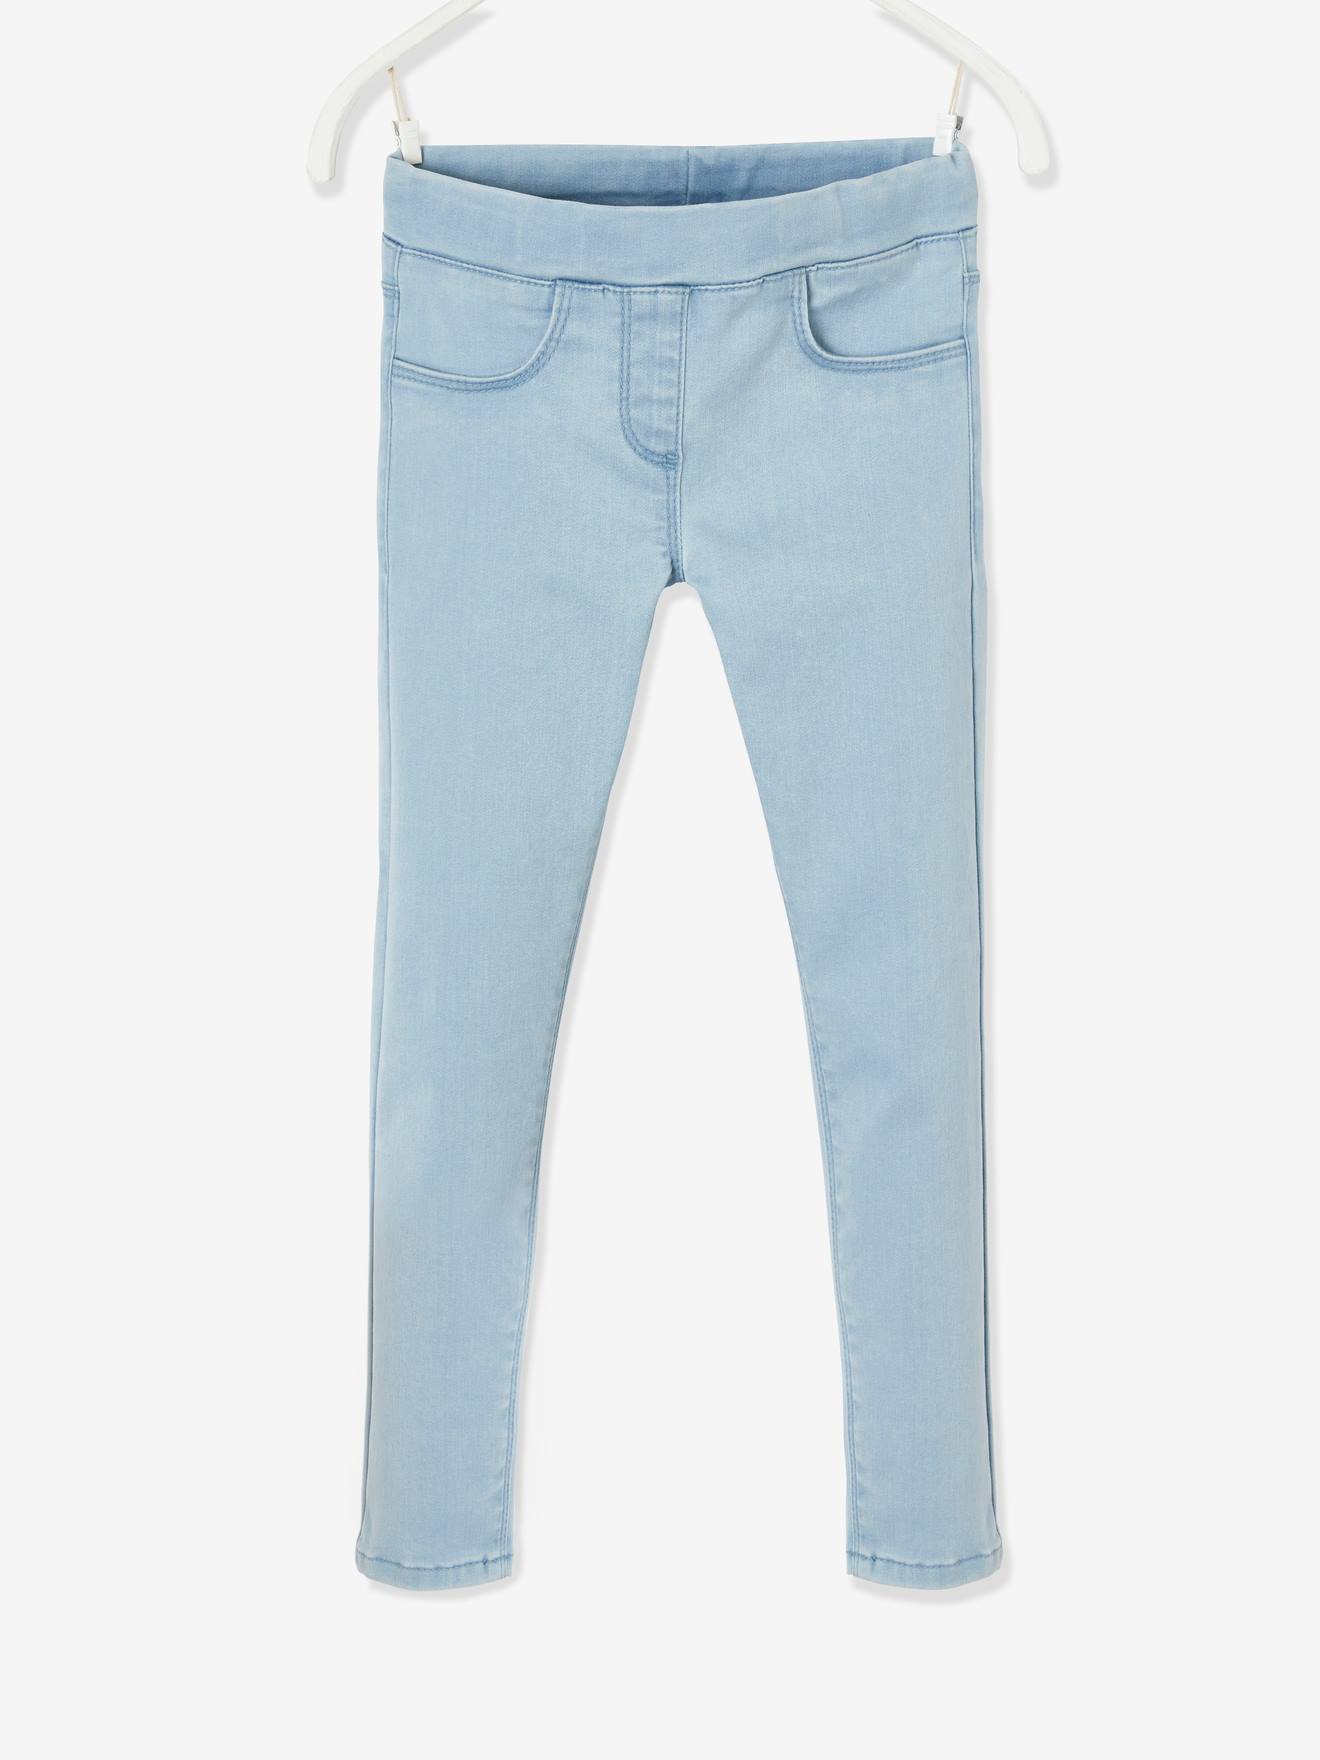 Haute Qualité Coton Bébé Fille Extensible Jeans denim jegging pantalon brodé 